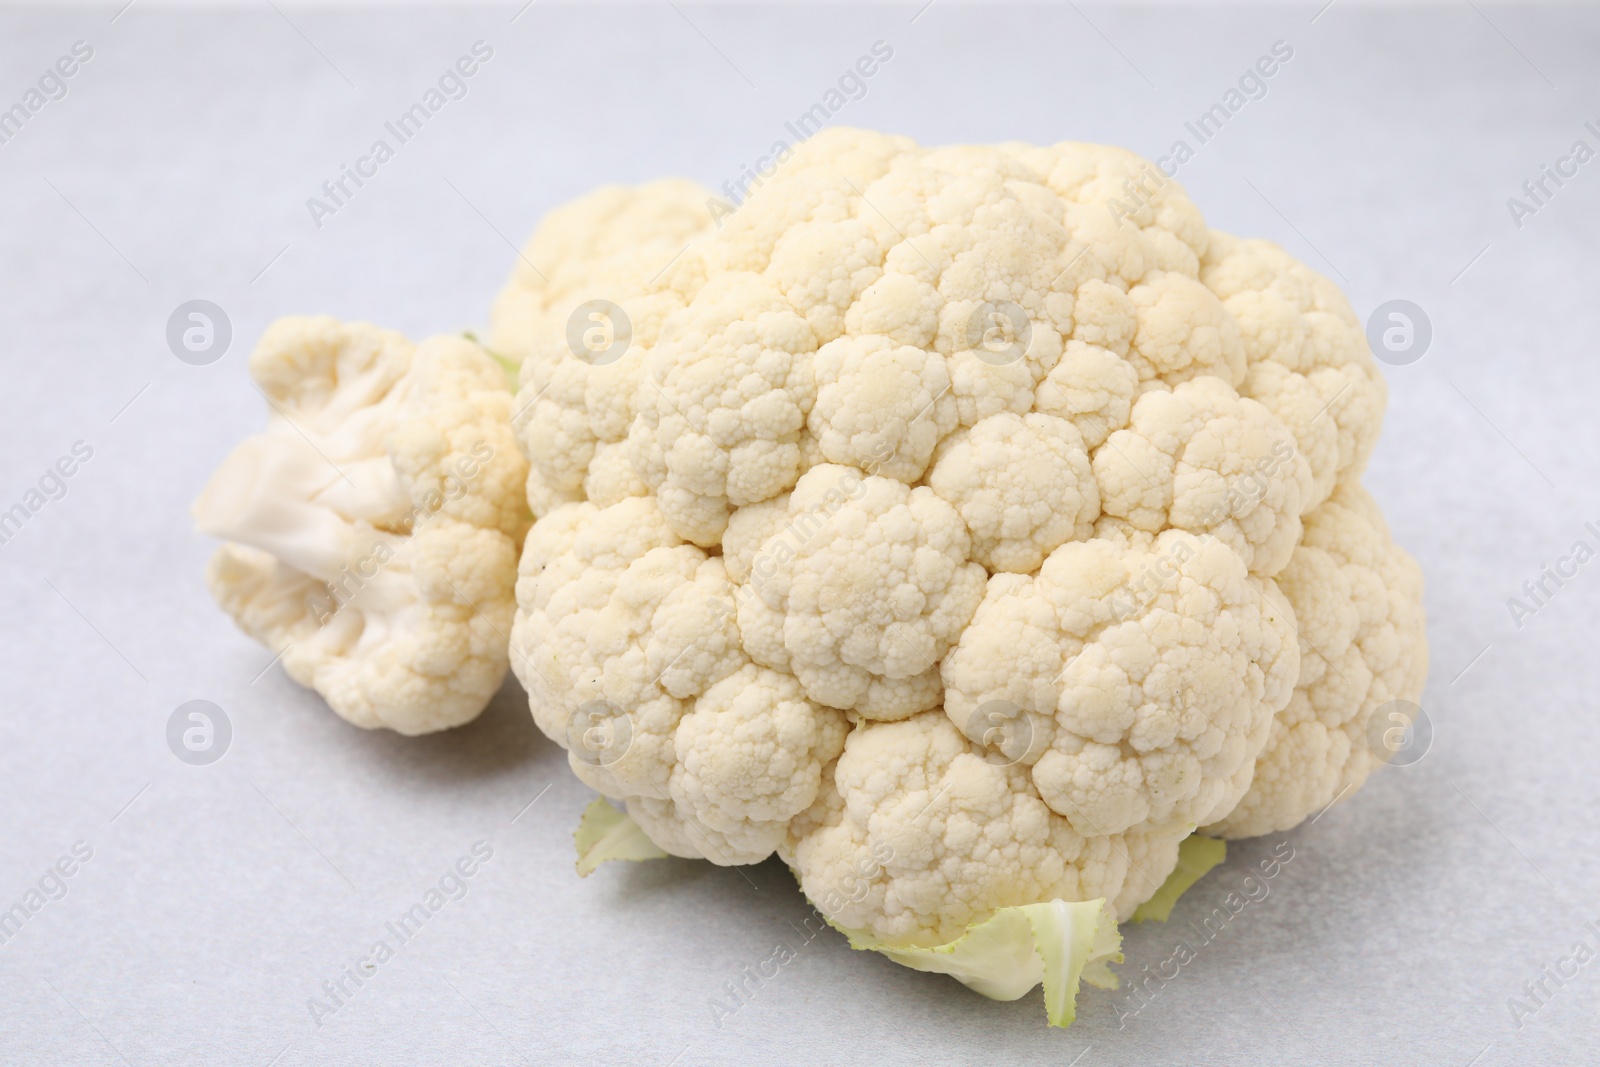 Photo of Cut fresh raw cauliflower on light grey table